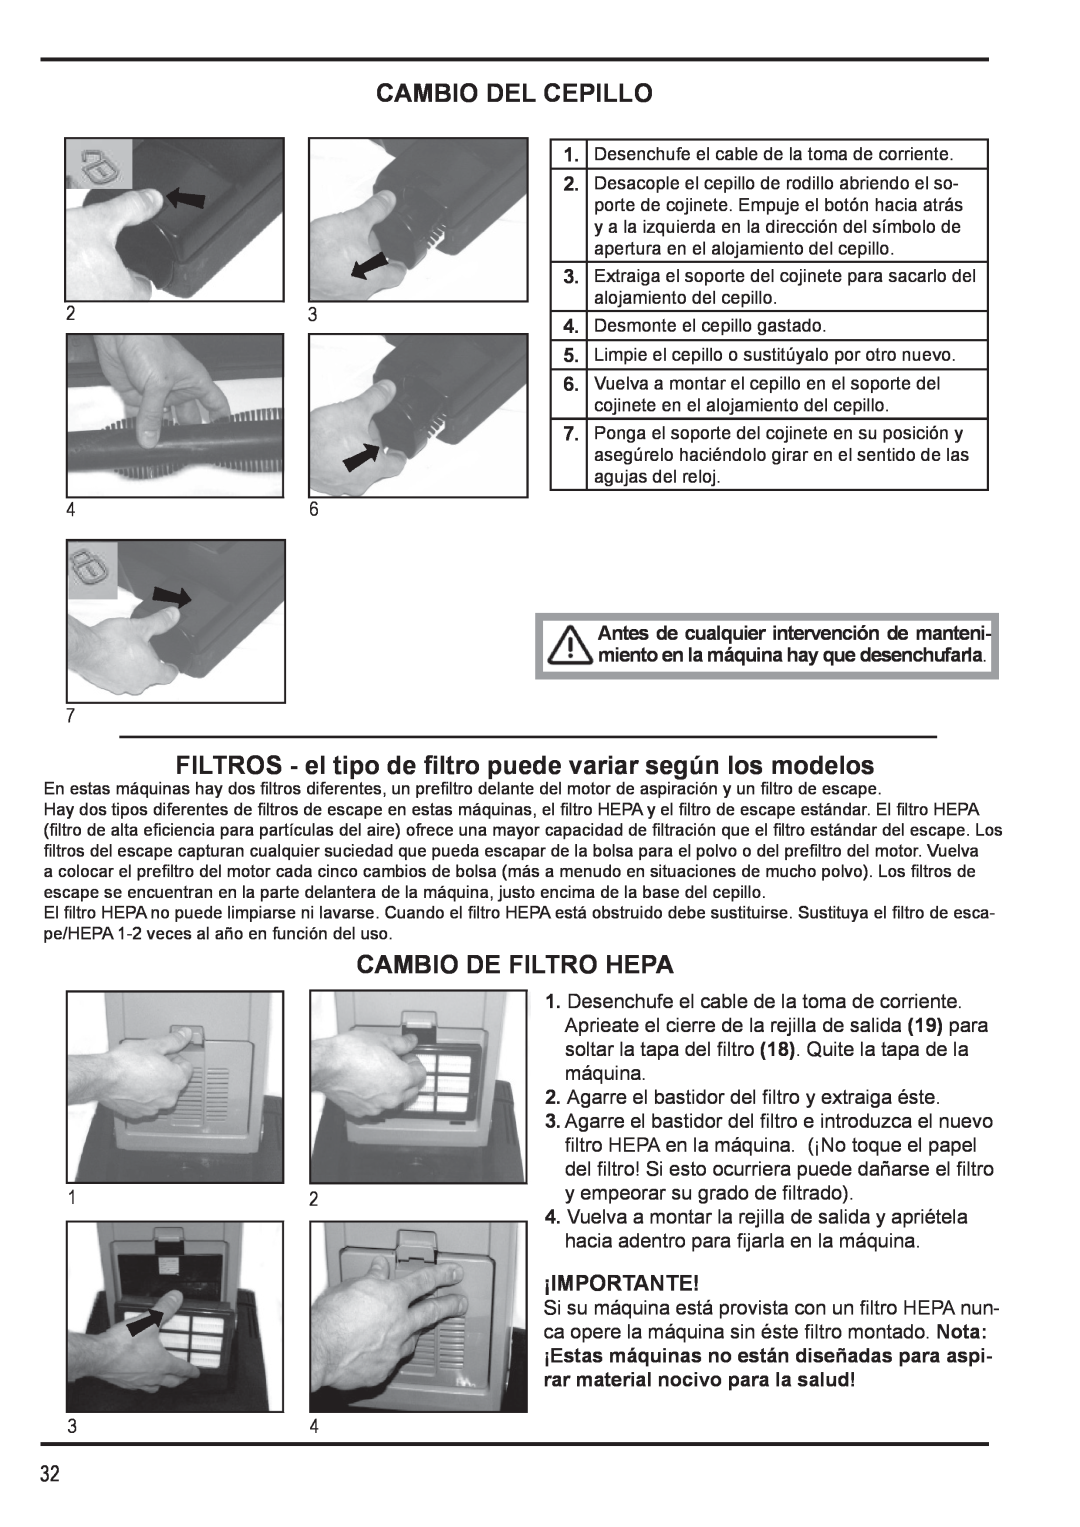 Nilfisk-Advance America 12H manual Cambio Del Cepillo, Cambio De Filtro Hepa, ¡Importante 